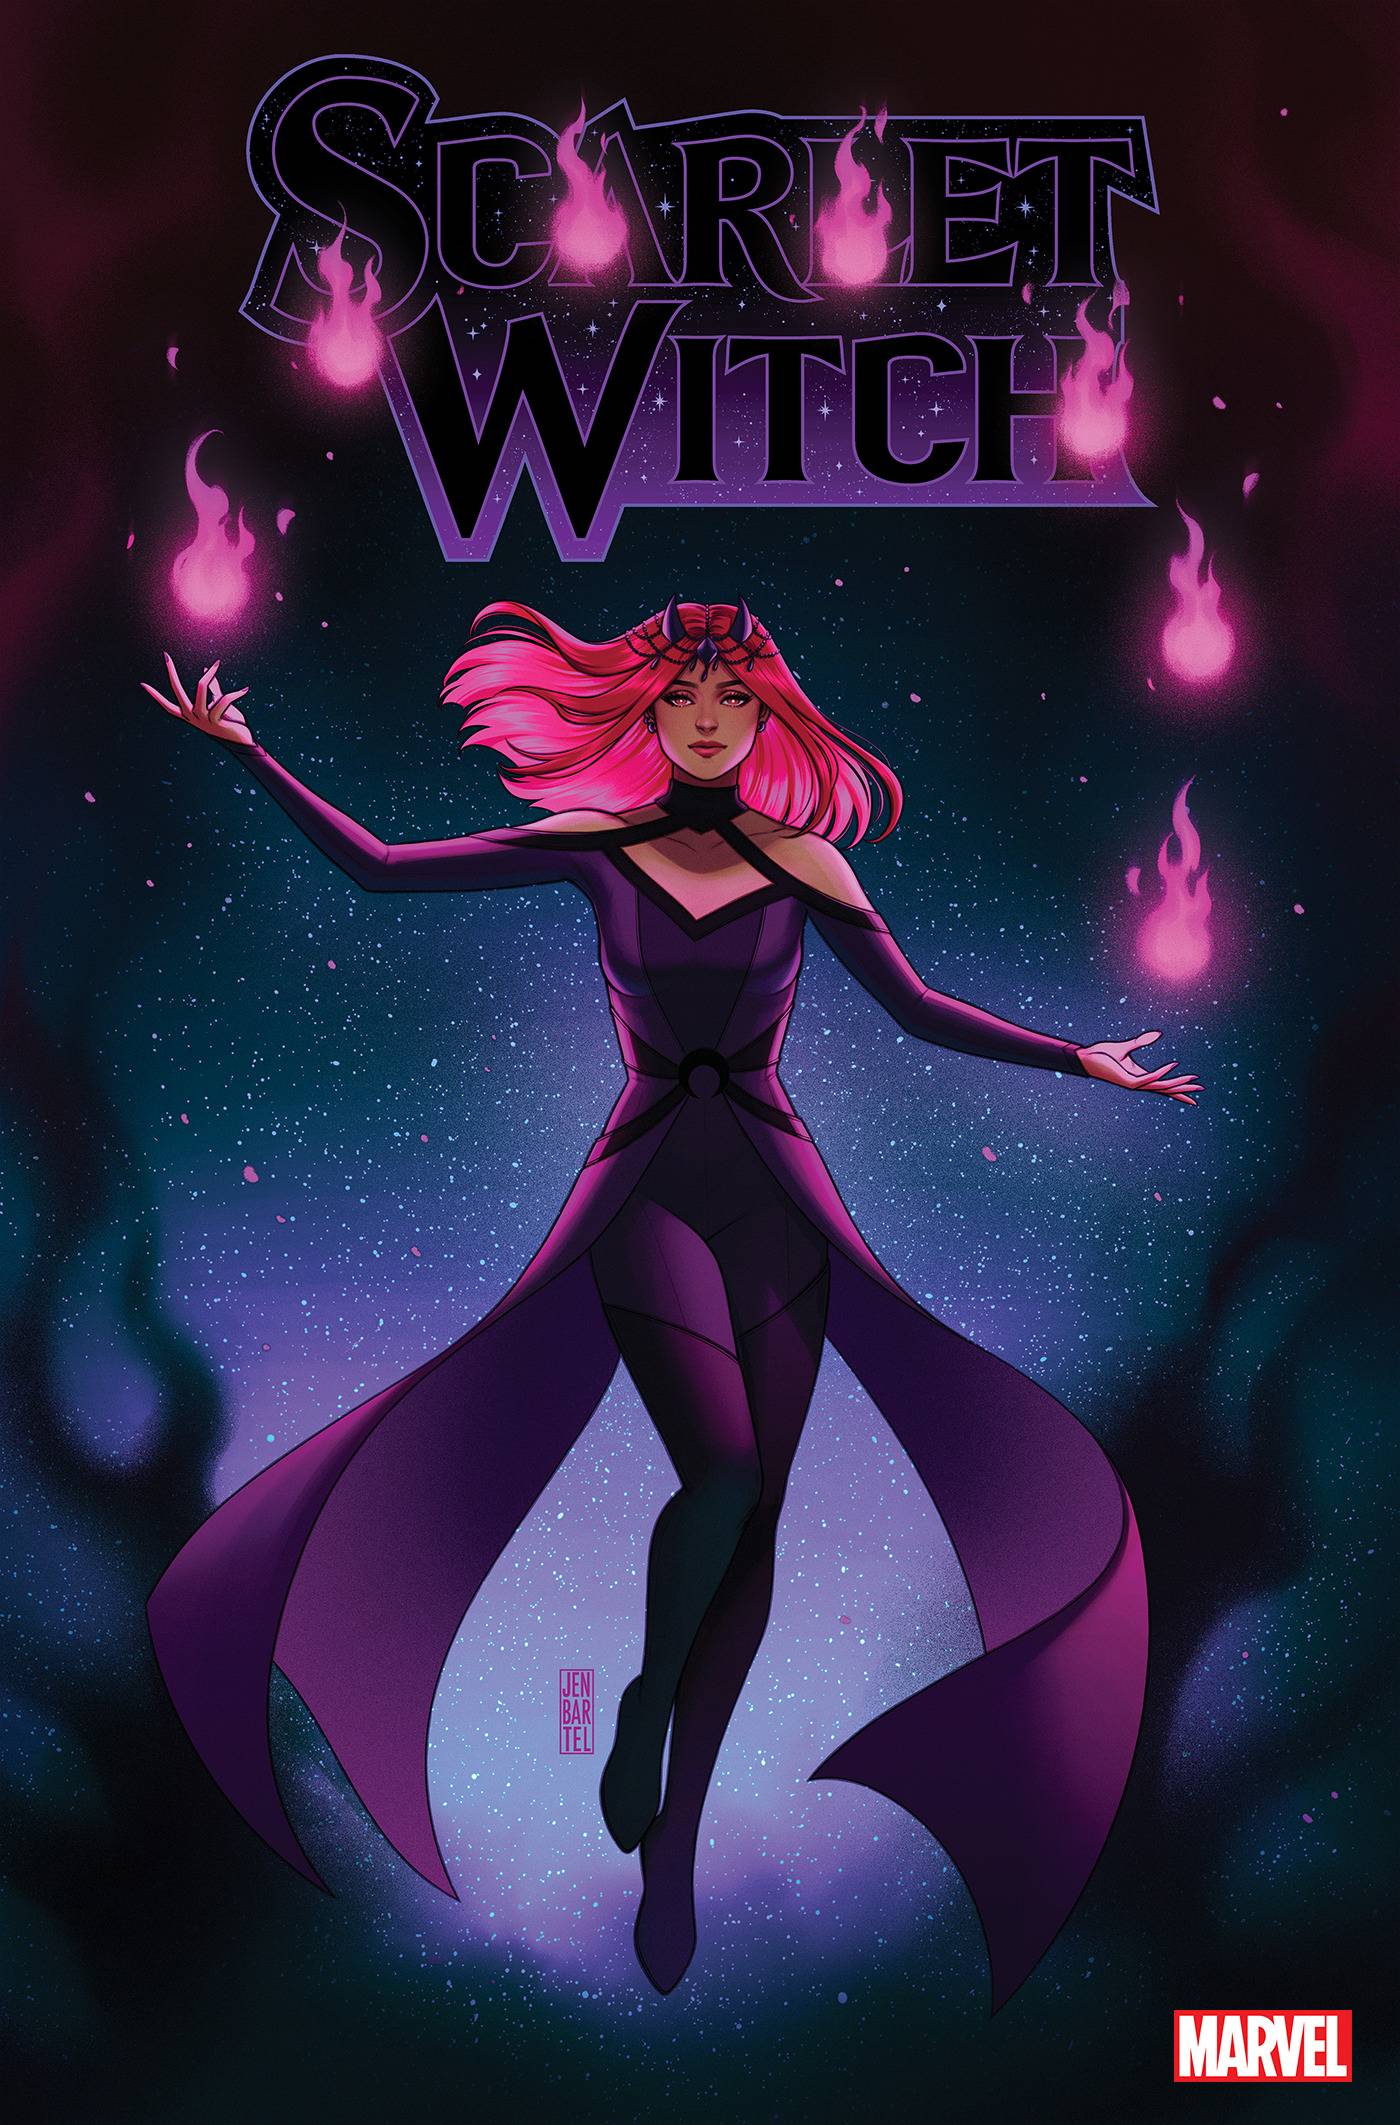 Scarlet Witch, The Last Door